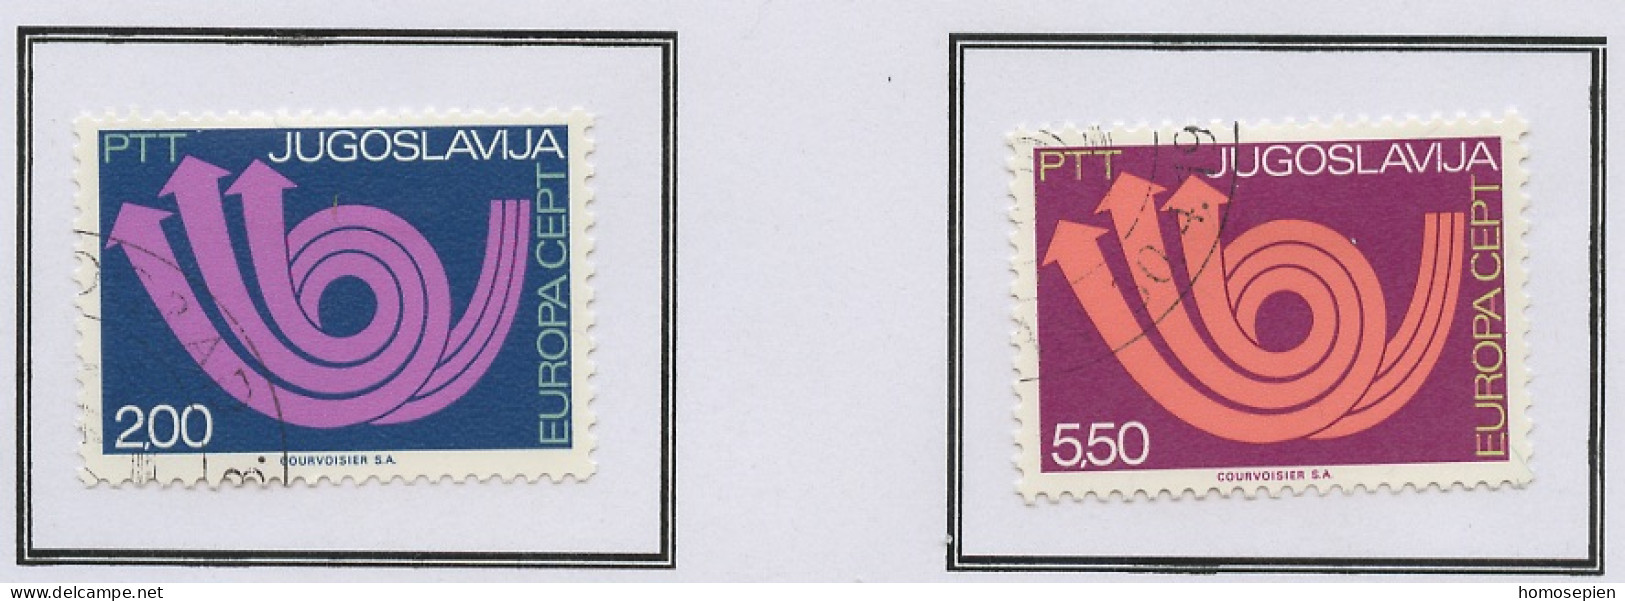 Yougoslavie - Jugoslawien - Yugoslavia 1973 Y&T N°1390 à 1391 - Michel N°1507 à 1508 (o) - EUROPA - Gebraucht